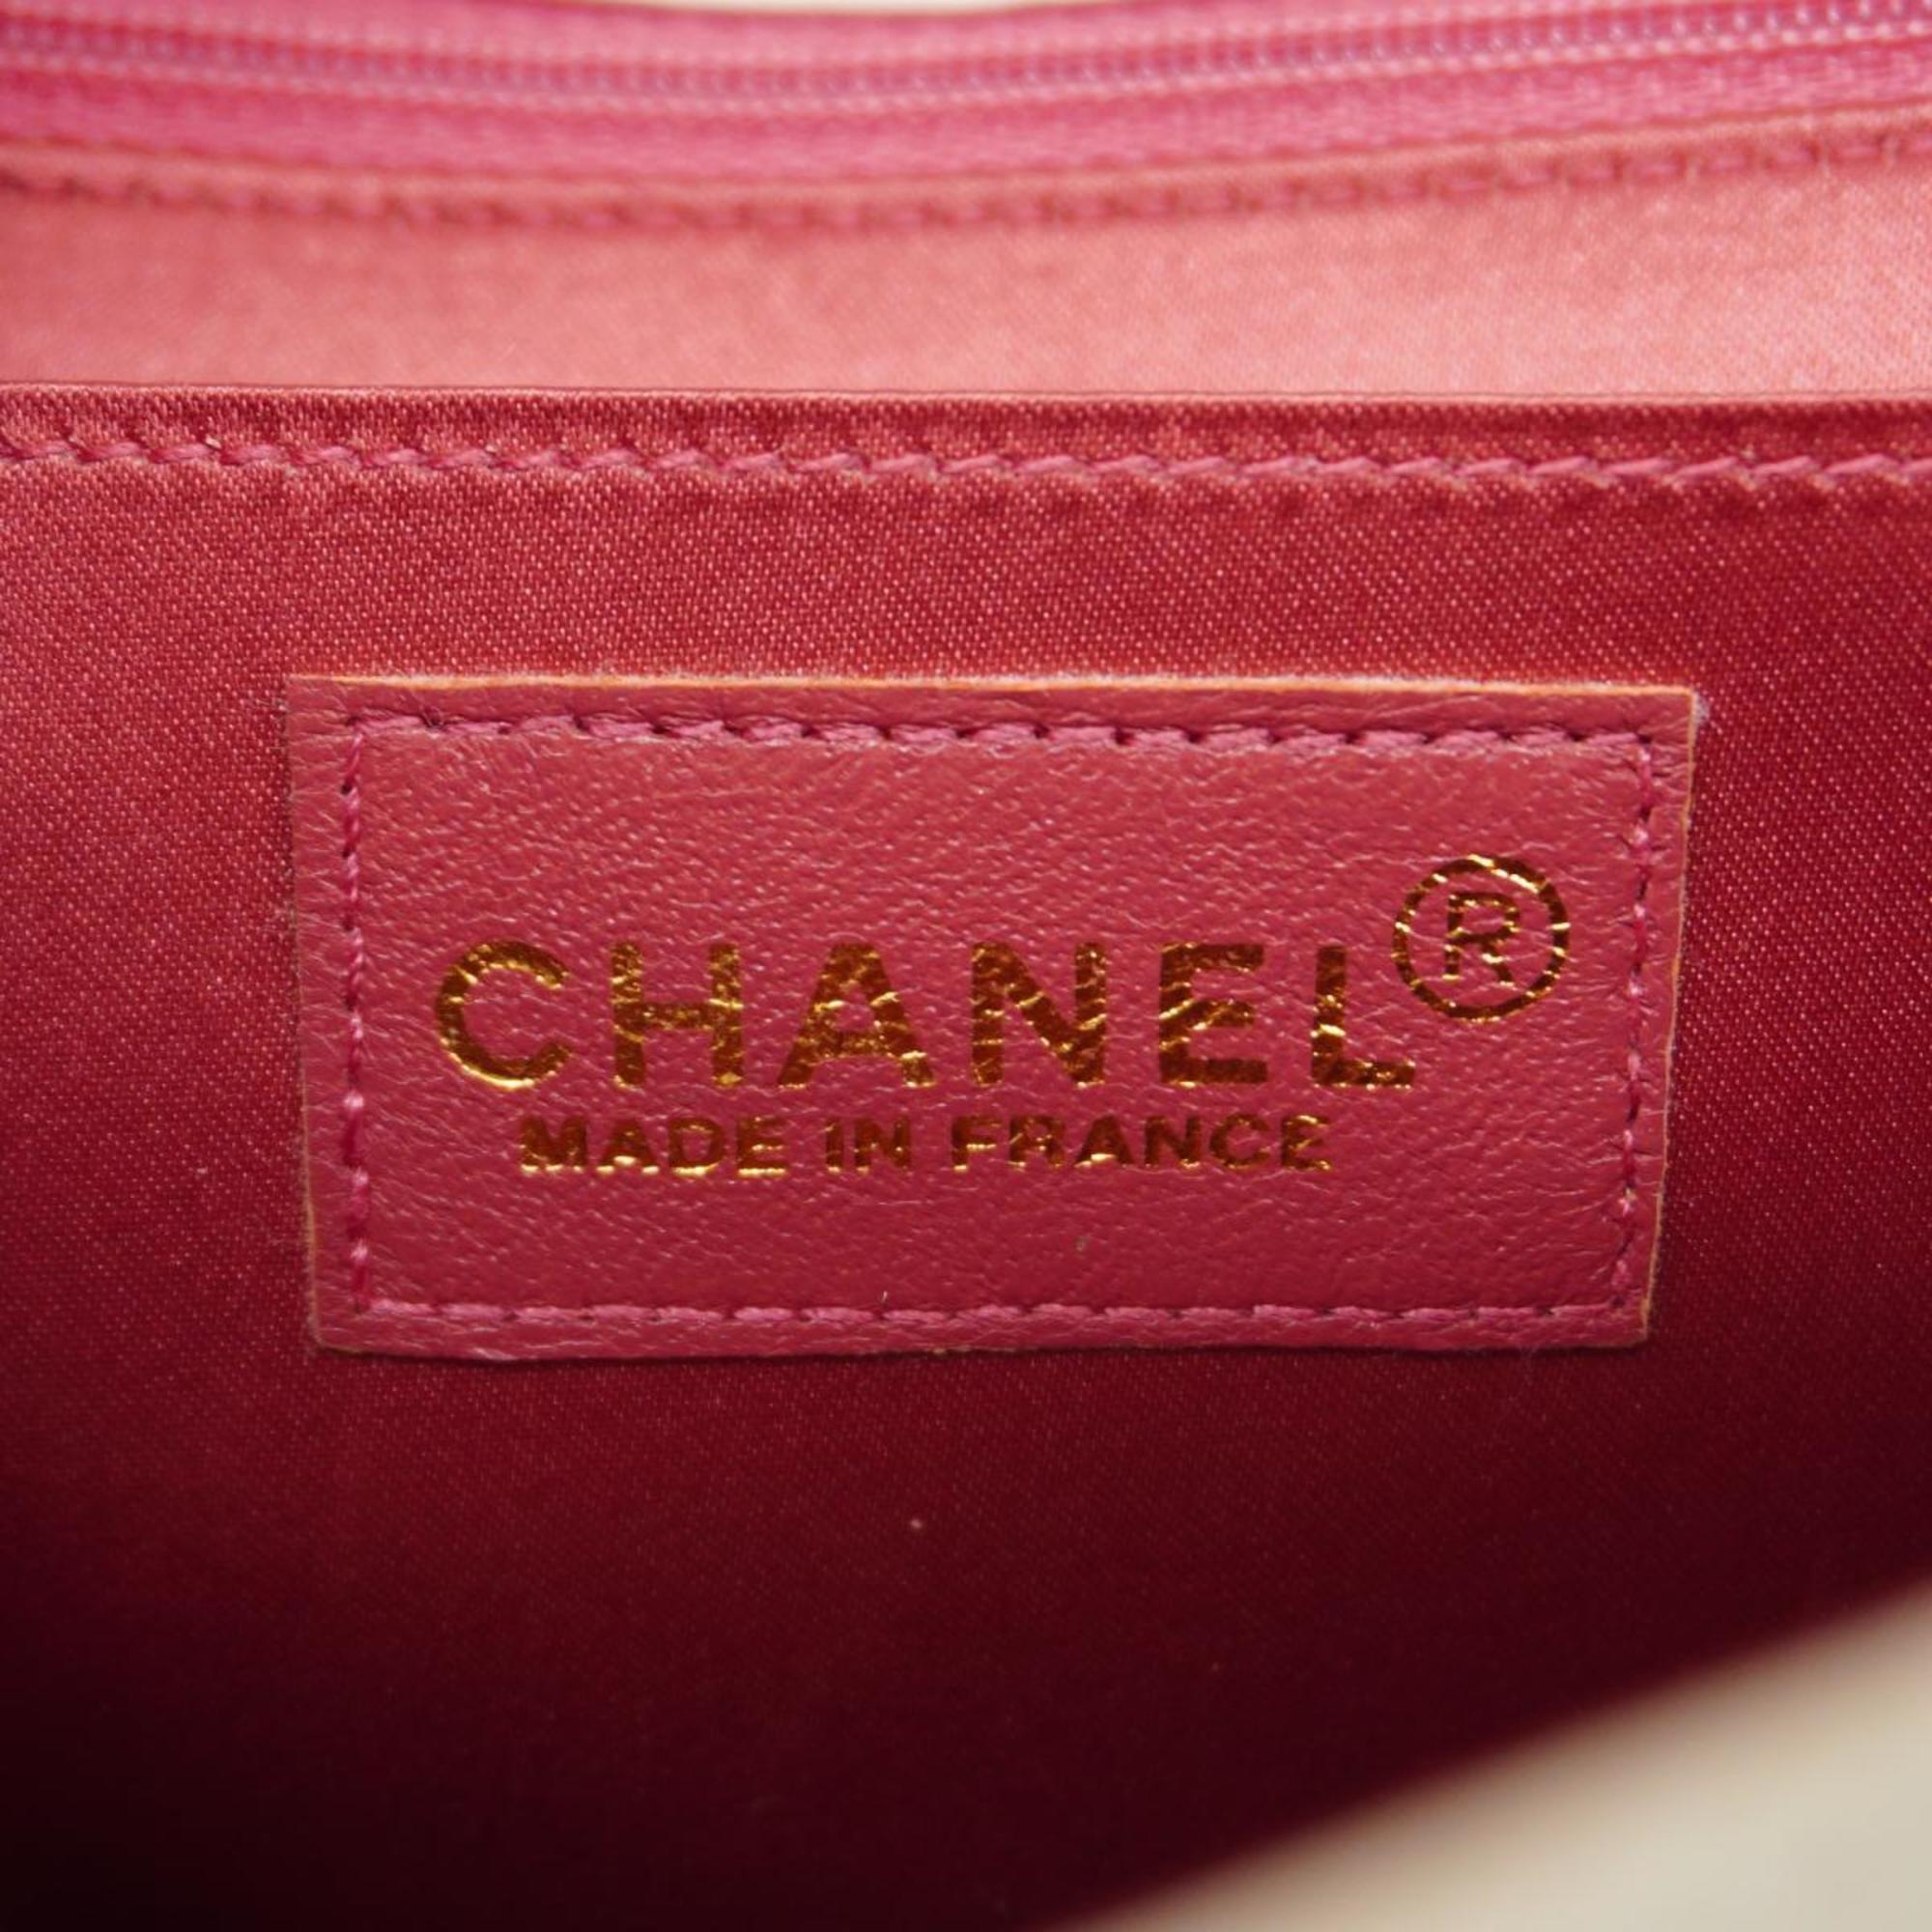 シャネル(Chanel) シャネル ショルダーバッグ チョコバー スポーツ ラムスキン ホワイト ピンク   レディース